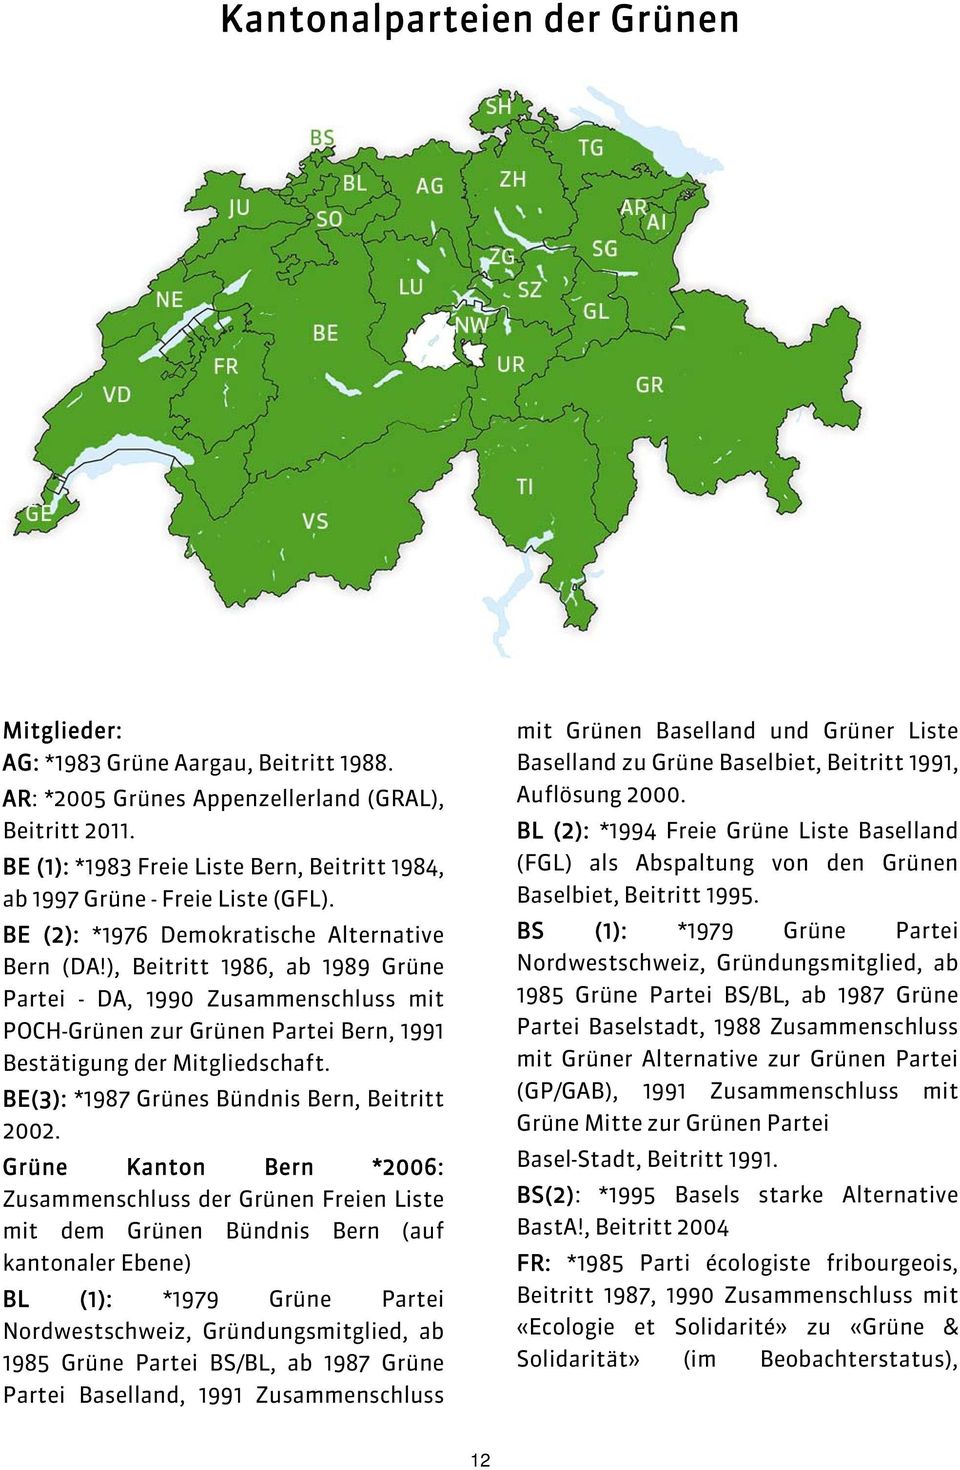 ), Beitritt 1986, ab 1989 Grüne Partei - DA, 1990 Zusammenschluss mit POCH-Grünen zur Grünen Partei Bern, 1991 Bestätigung der Mitgliedschaft. BE(3): *1987 Grünes Bündnis Bern, Beitritt 2002.